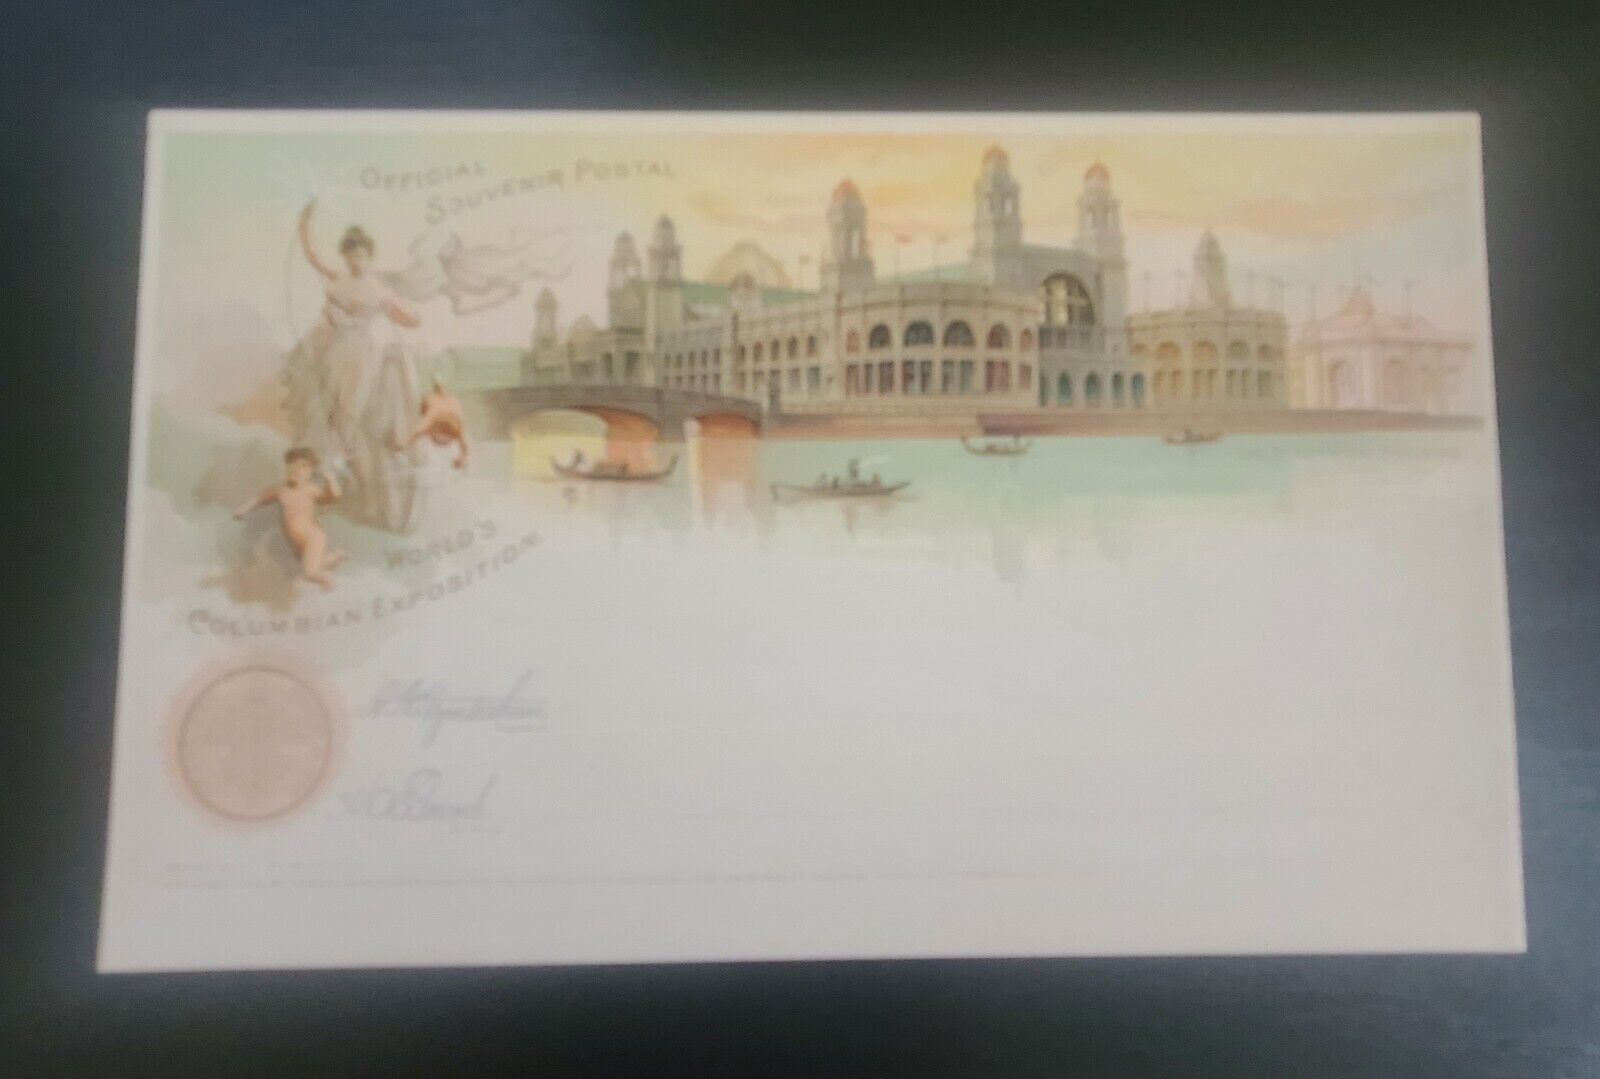 1893 Worlds Columbian Exposition Worlds Fair Postcard Souvenir Series 1 Design 5